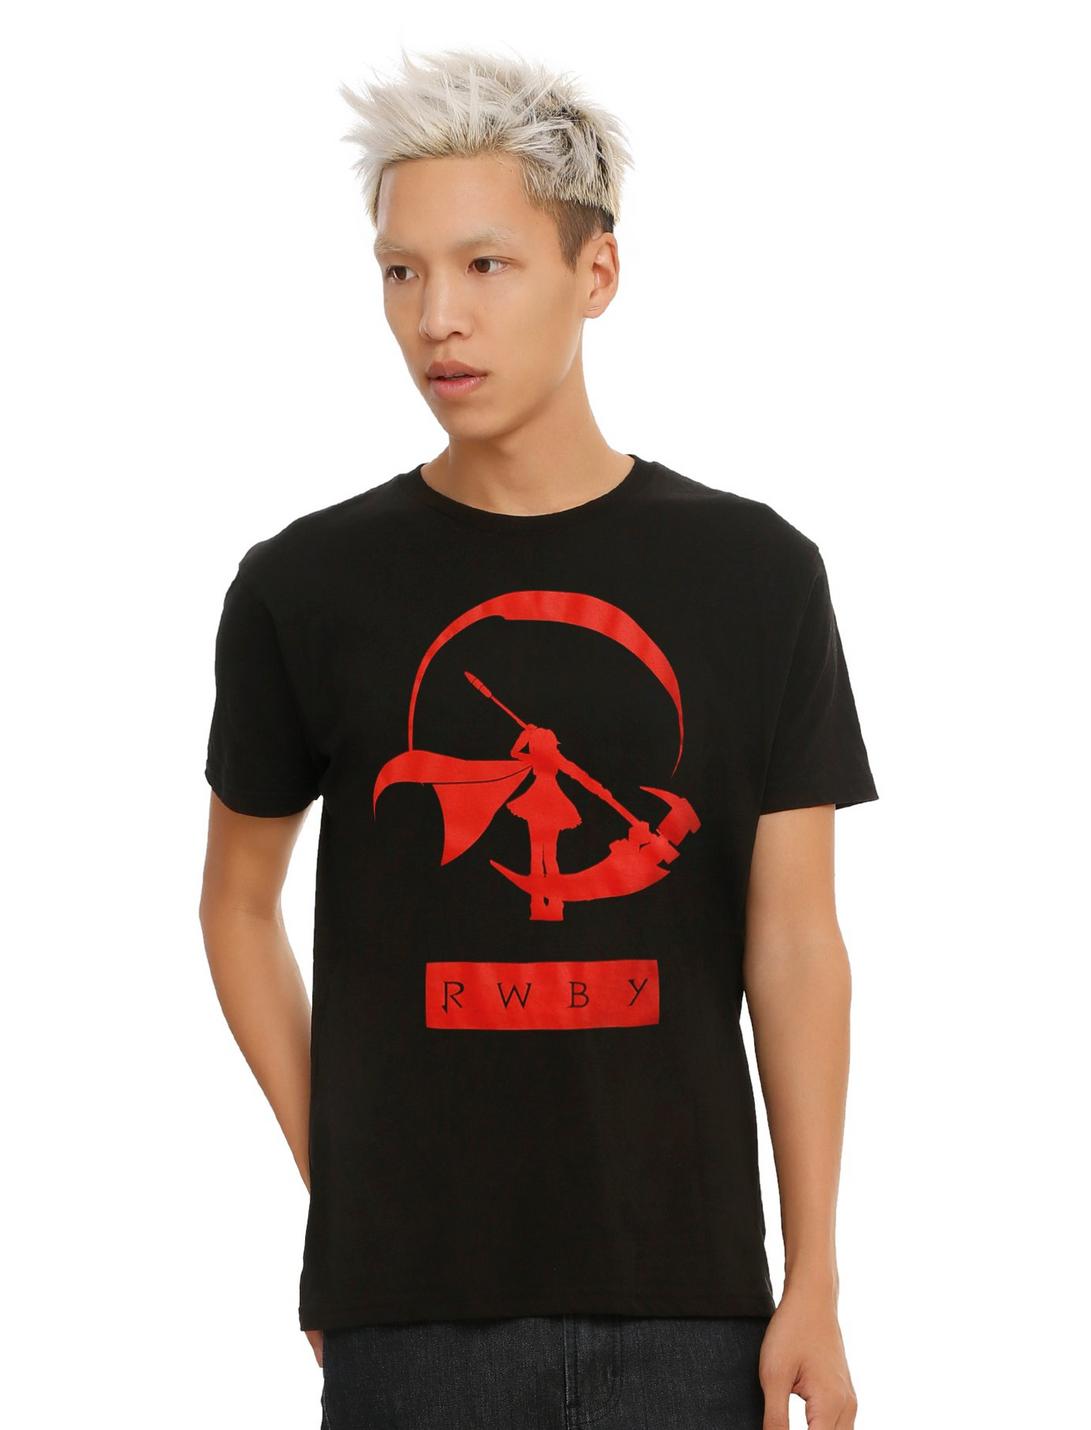 RWBY Ruby Silhouette T-Shirt, BLACK, hi-res